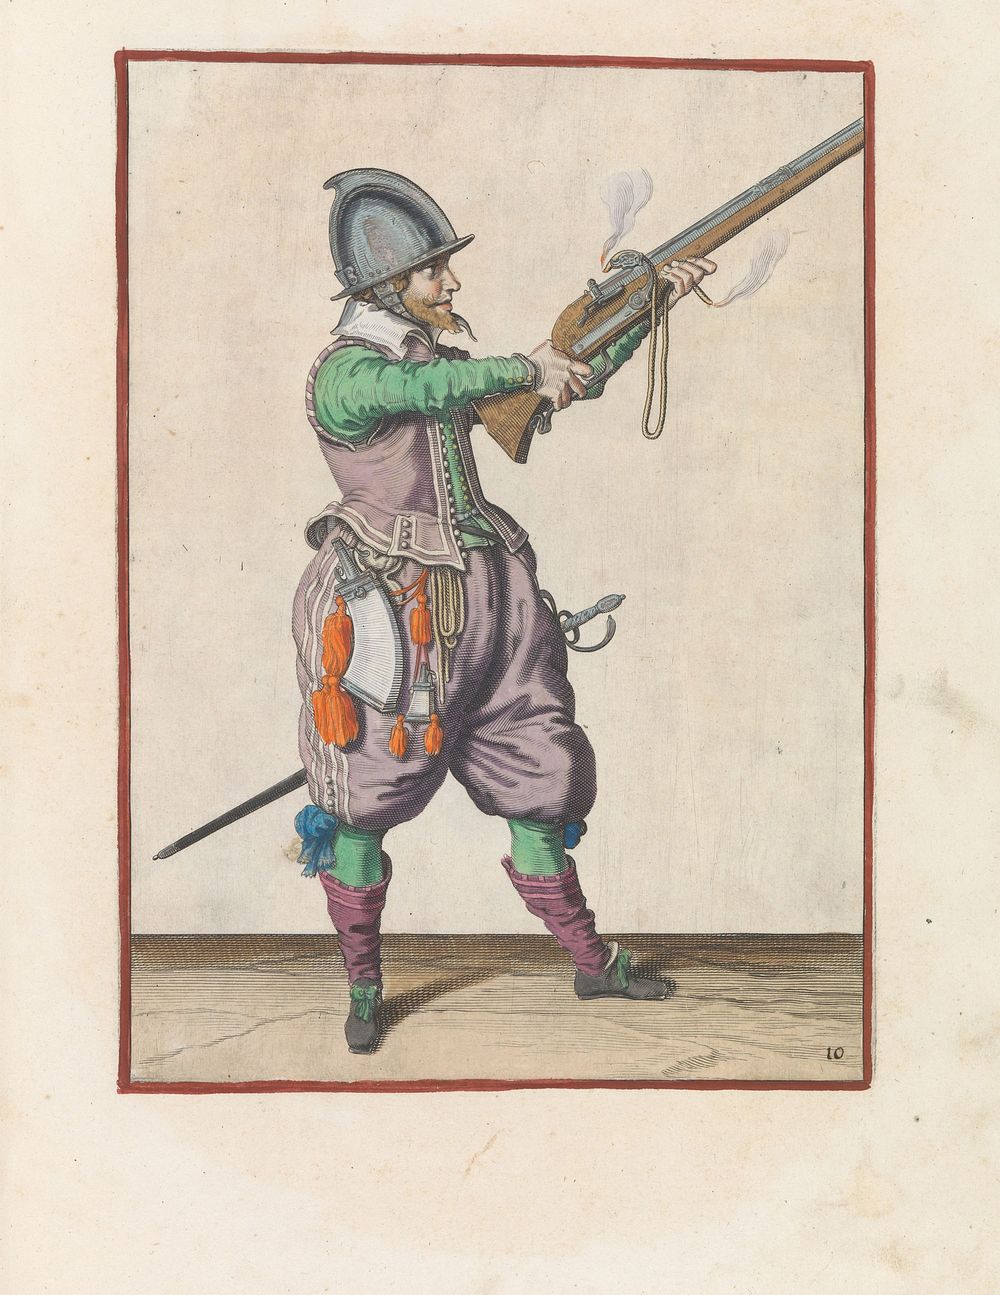 Soldaat richt de roer met beide handen omhoog (c. 1597 - 1607) by Jacques de Gheyn II and Jacques de Gheyn II